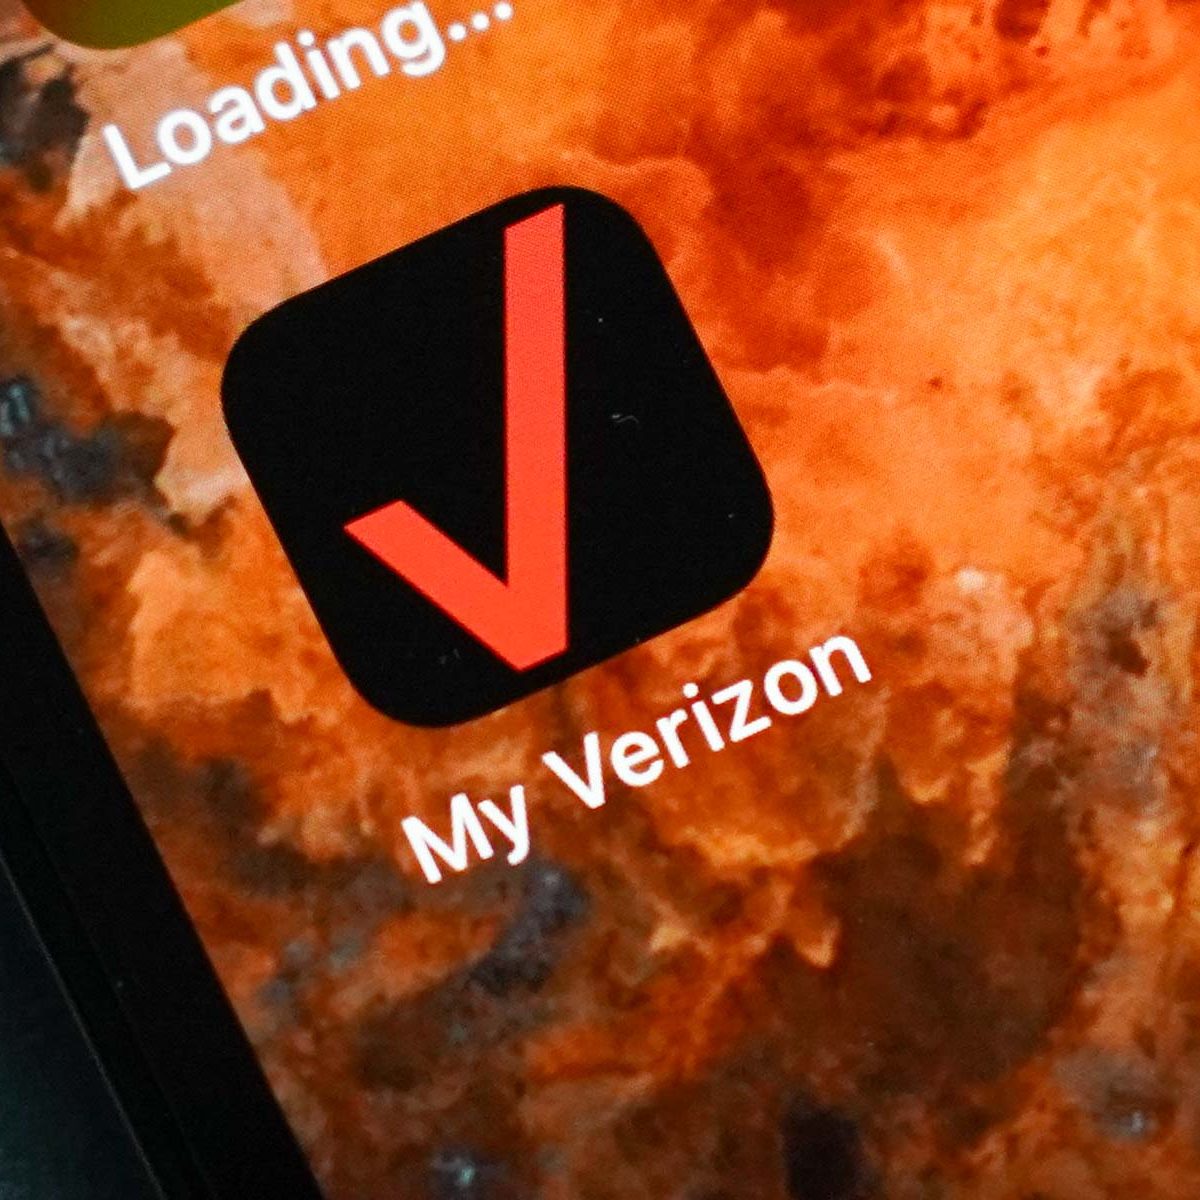 Get to know the My Verizon app